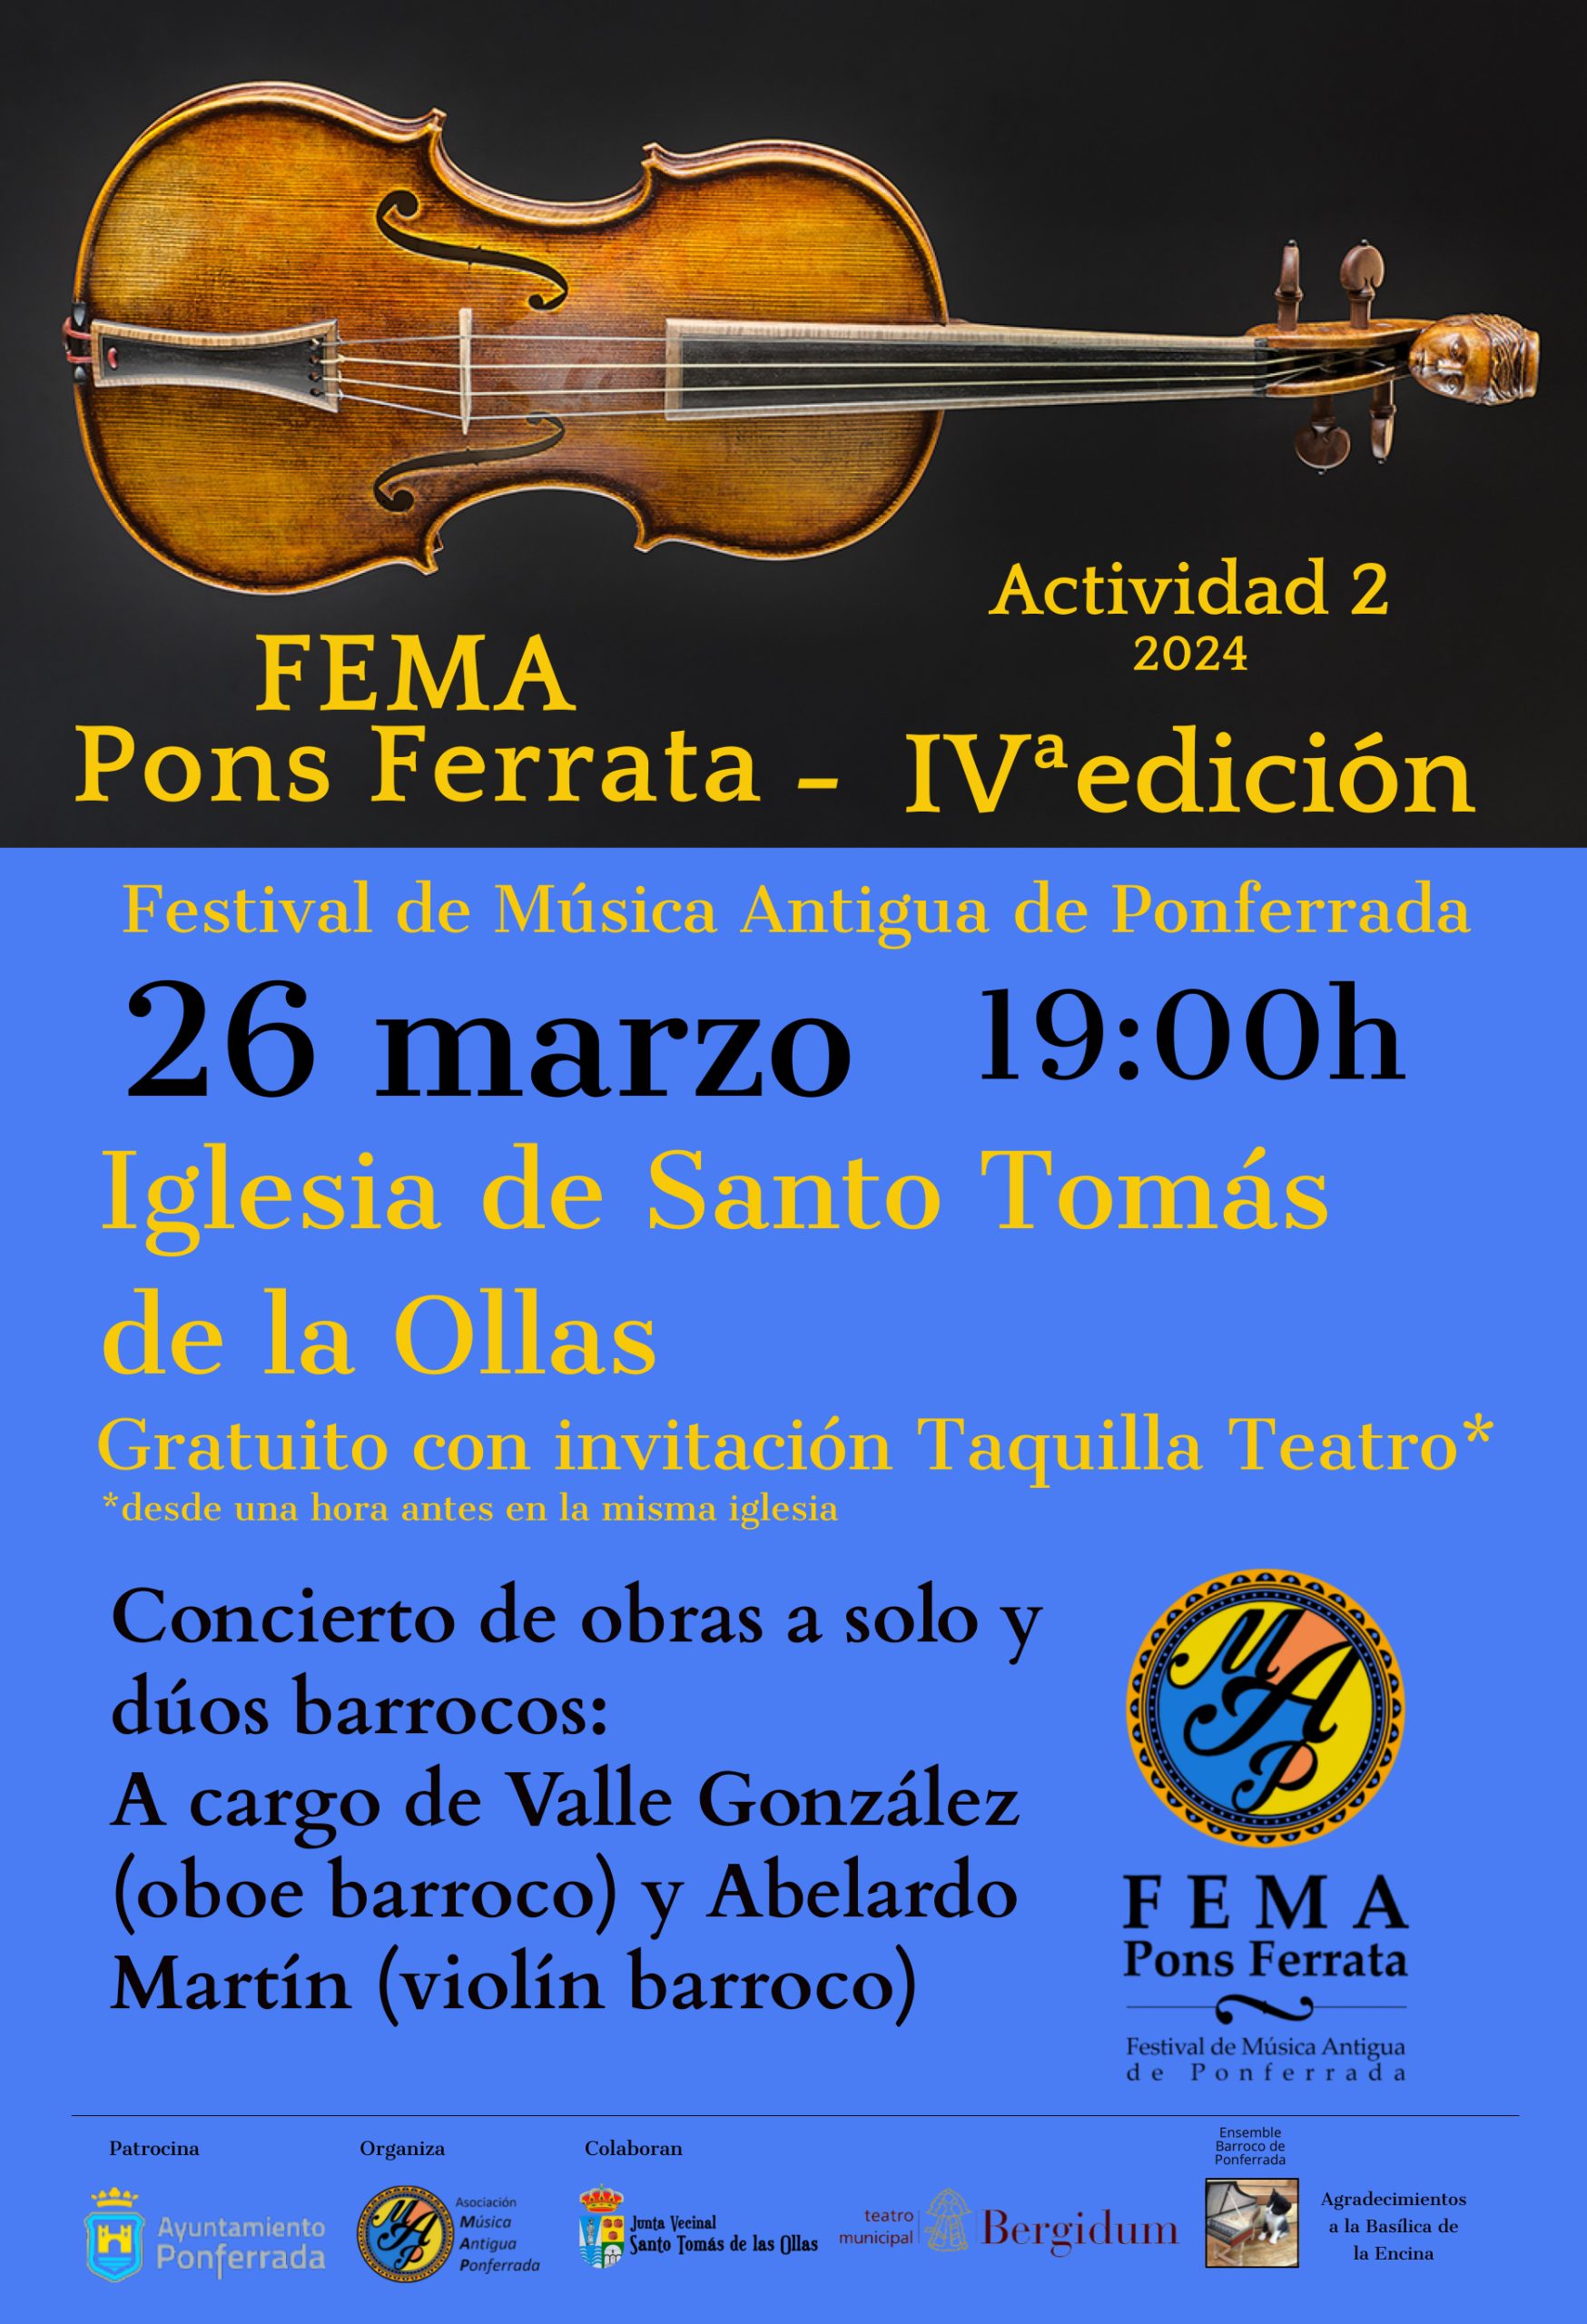 4ª edición del Festival de Música Antigua de Ponferrada “FEMA Pons Ferrata” se celebra del 25 al 27 de marzo 3